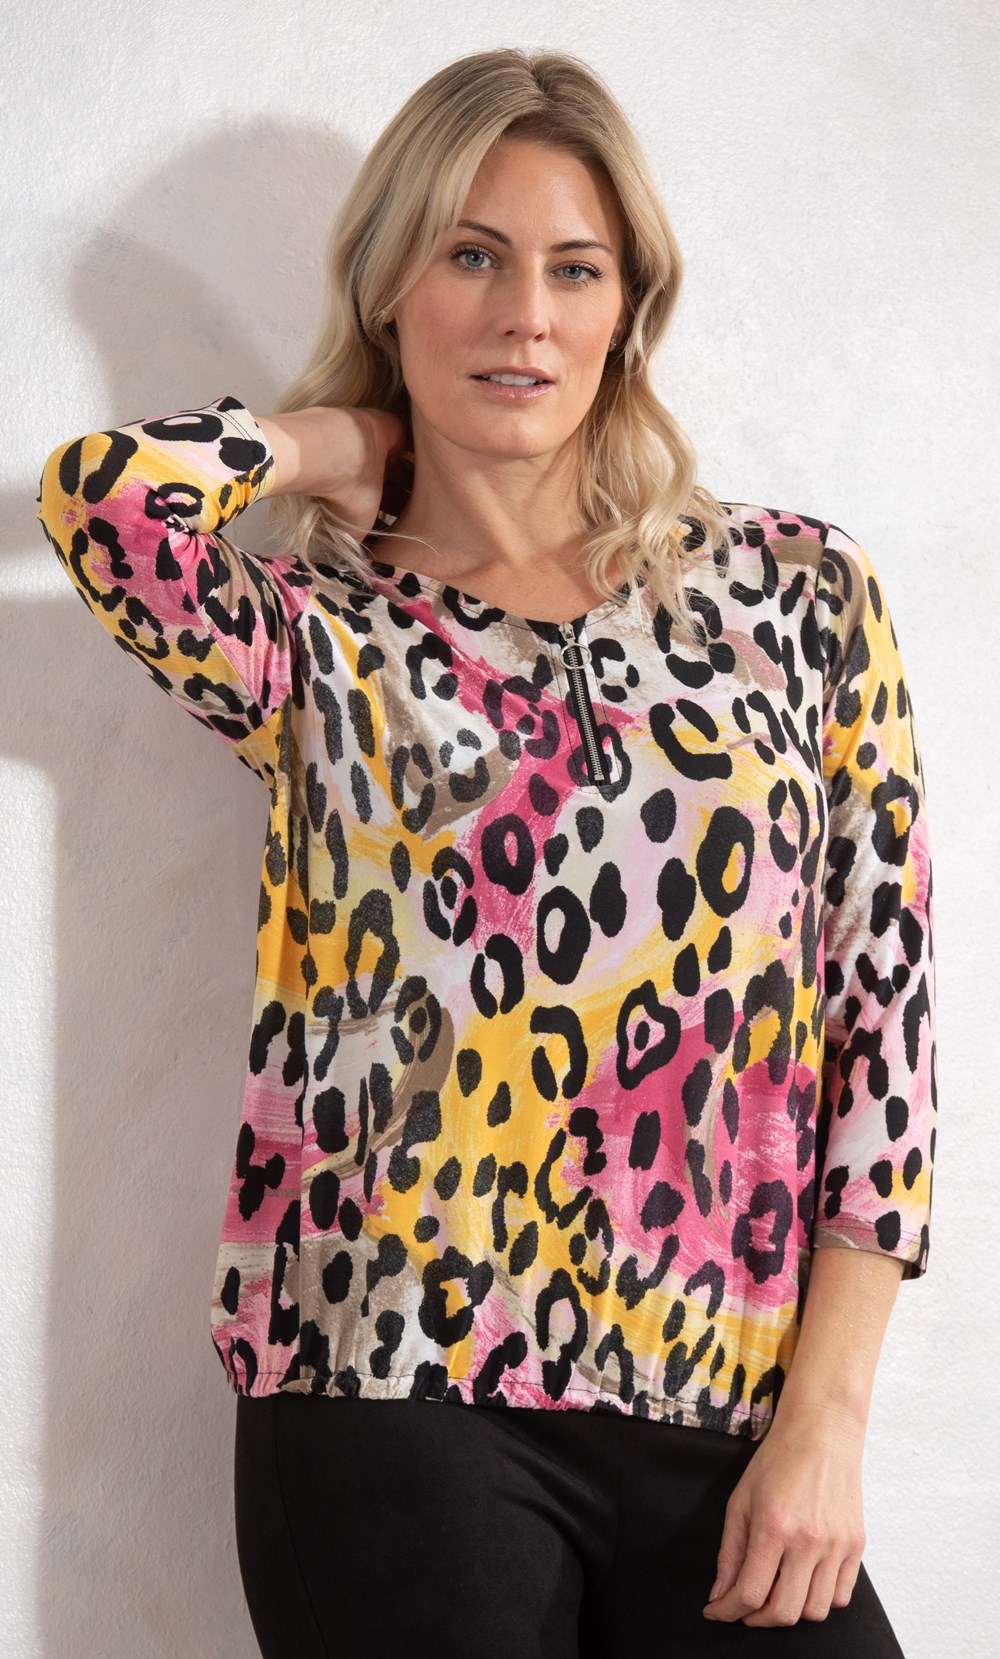 Brands - Klass Animal Print Zip Jersey Top Pink/Orange/Black Women’s